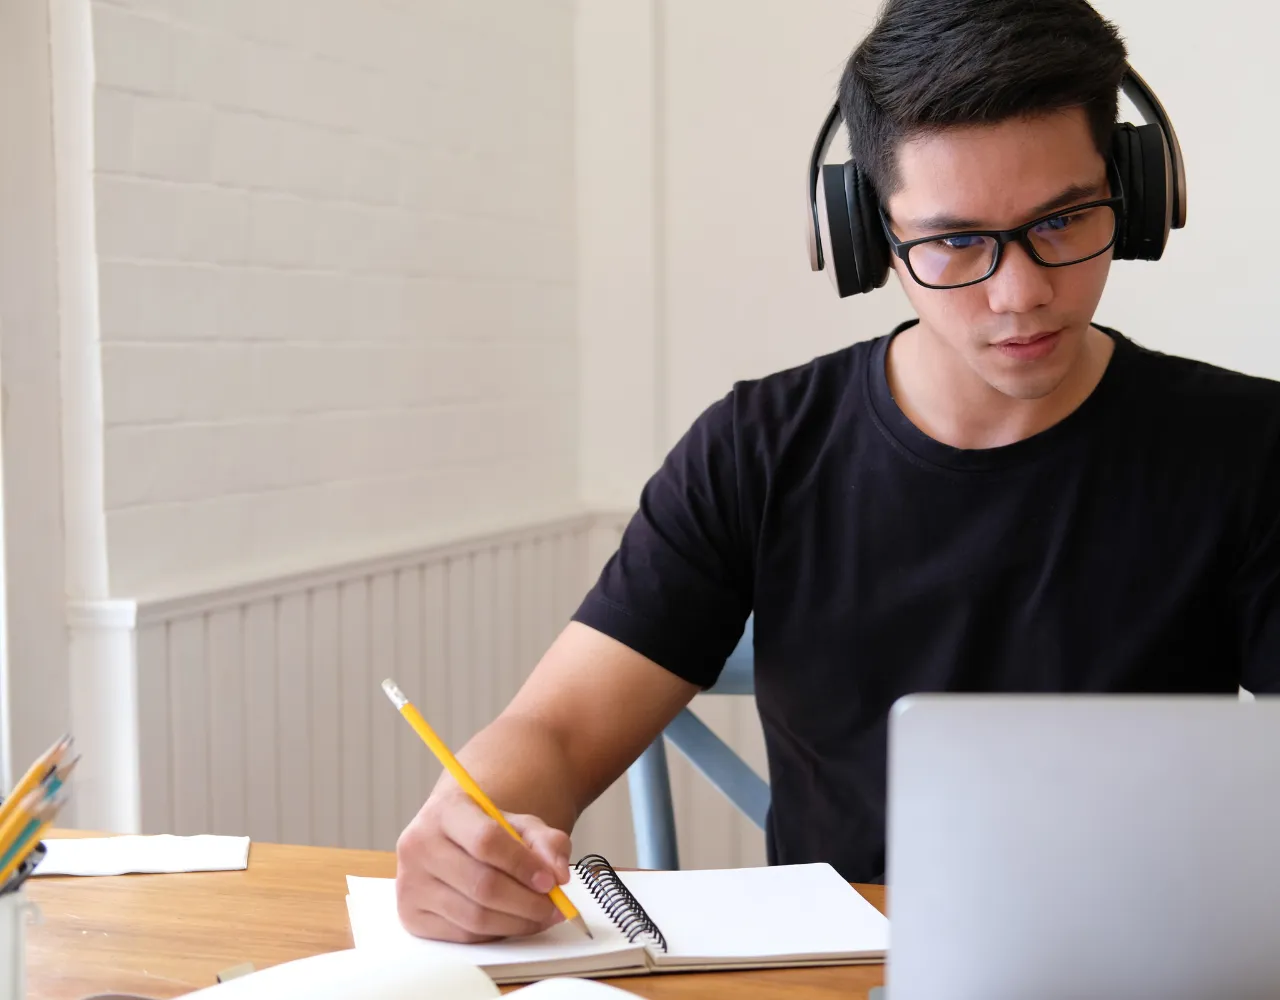 Um jovem focado, usando fones de ouvido e óculos, trabalha em uma mesa com um laptop, fazendo anotações em um caderno.